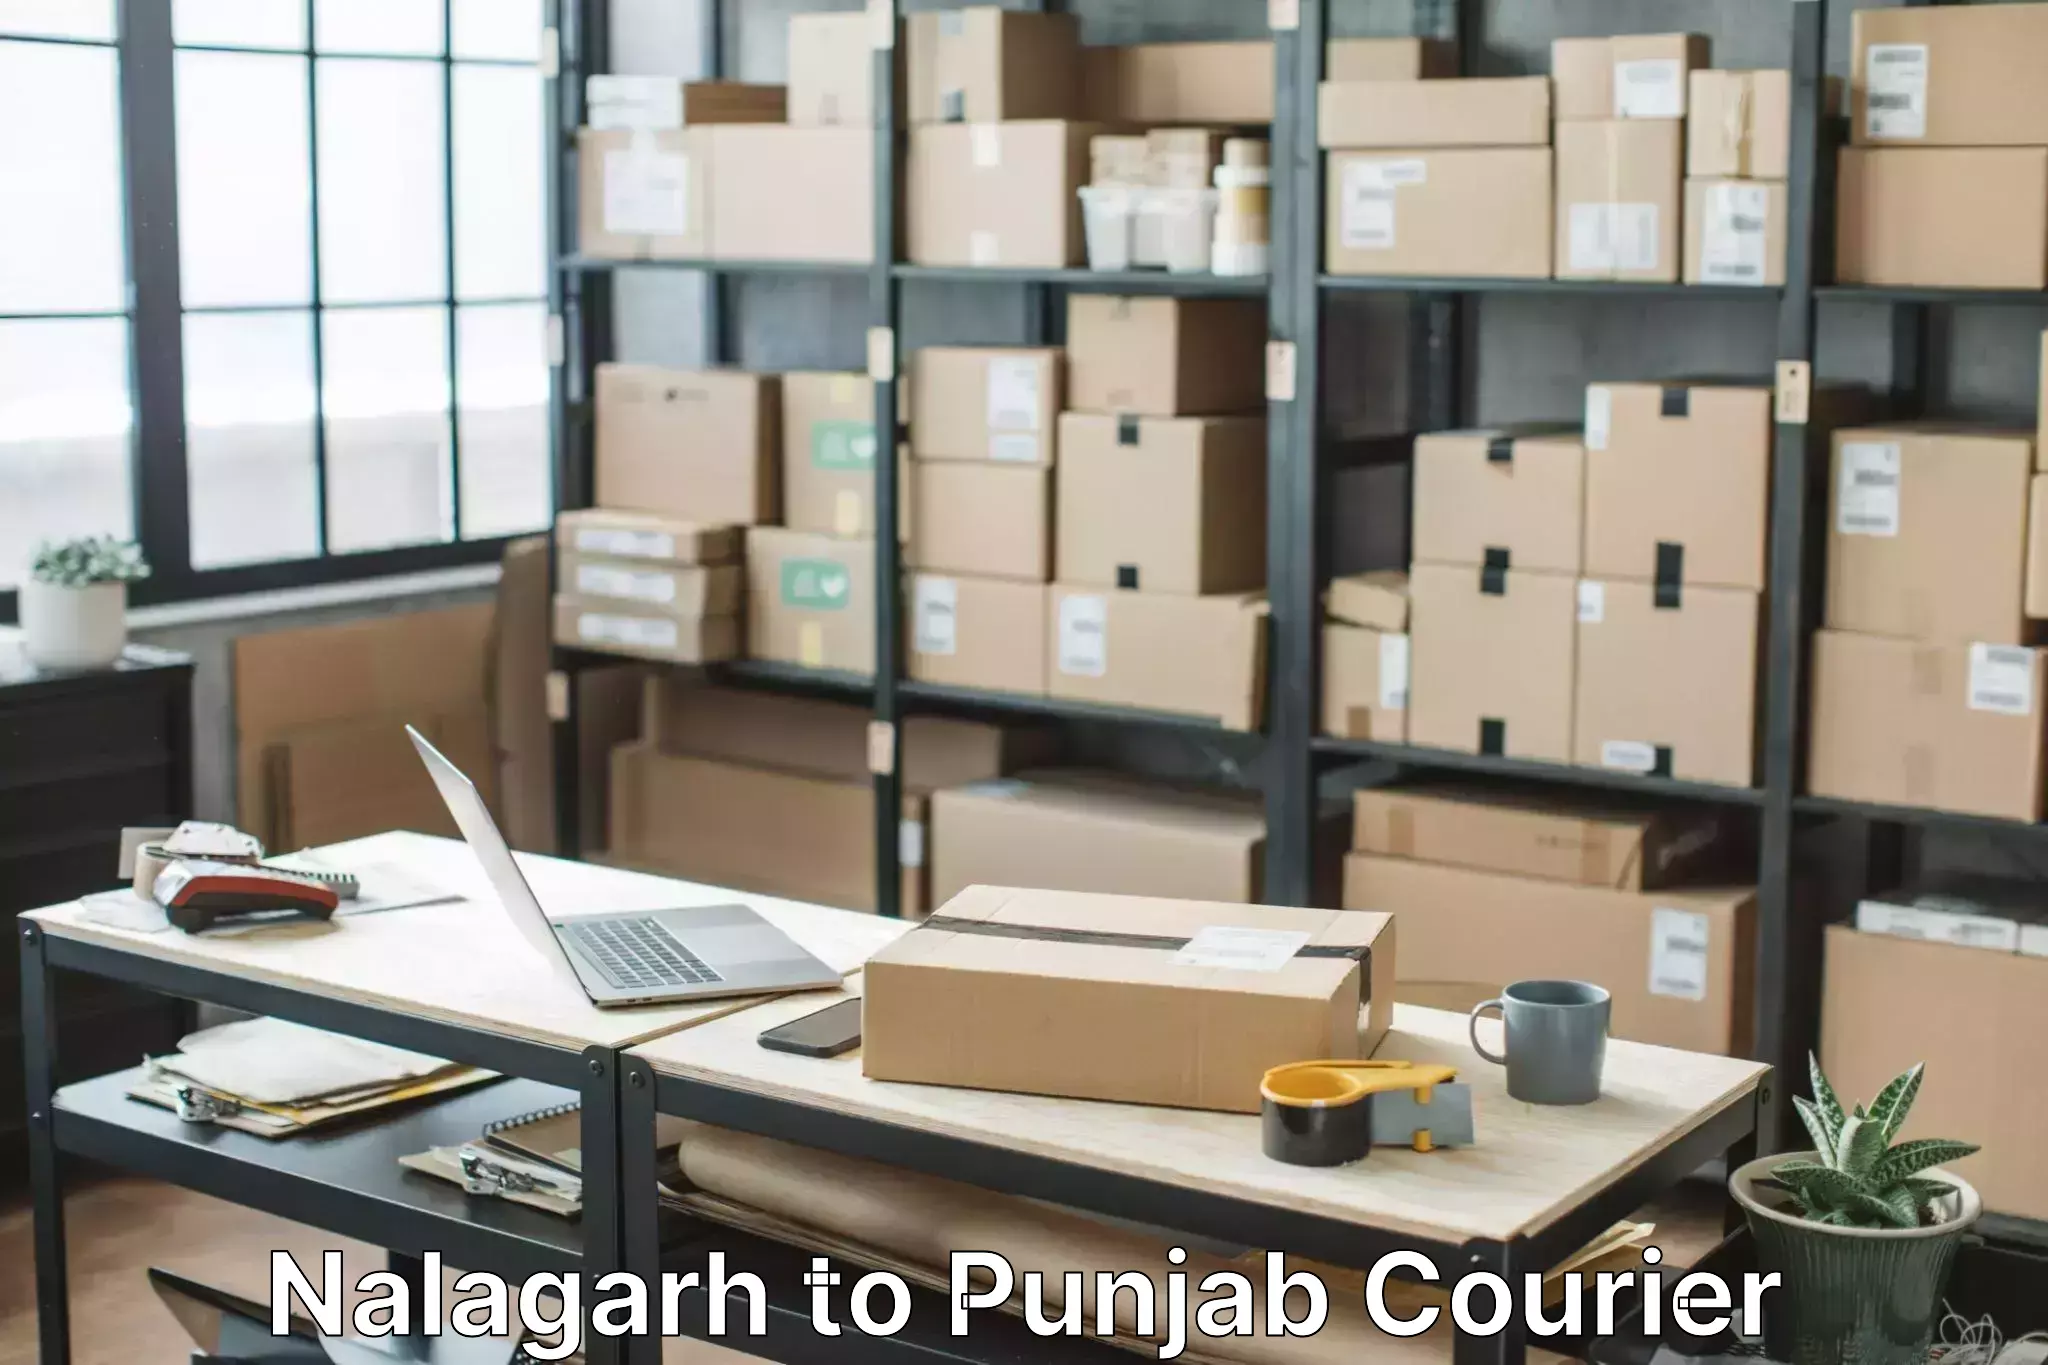 Furniture transport experts Nalagarh to Dinanagar